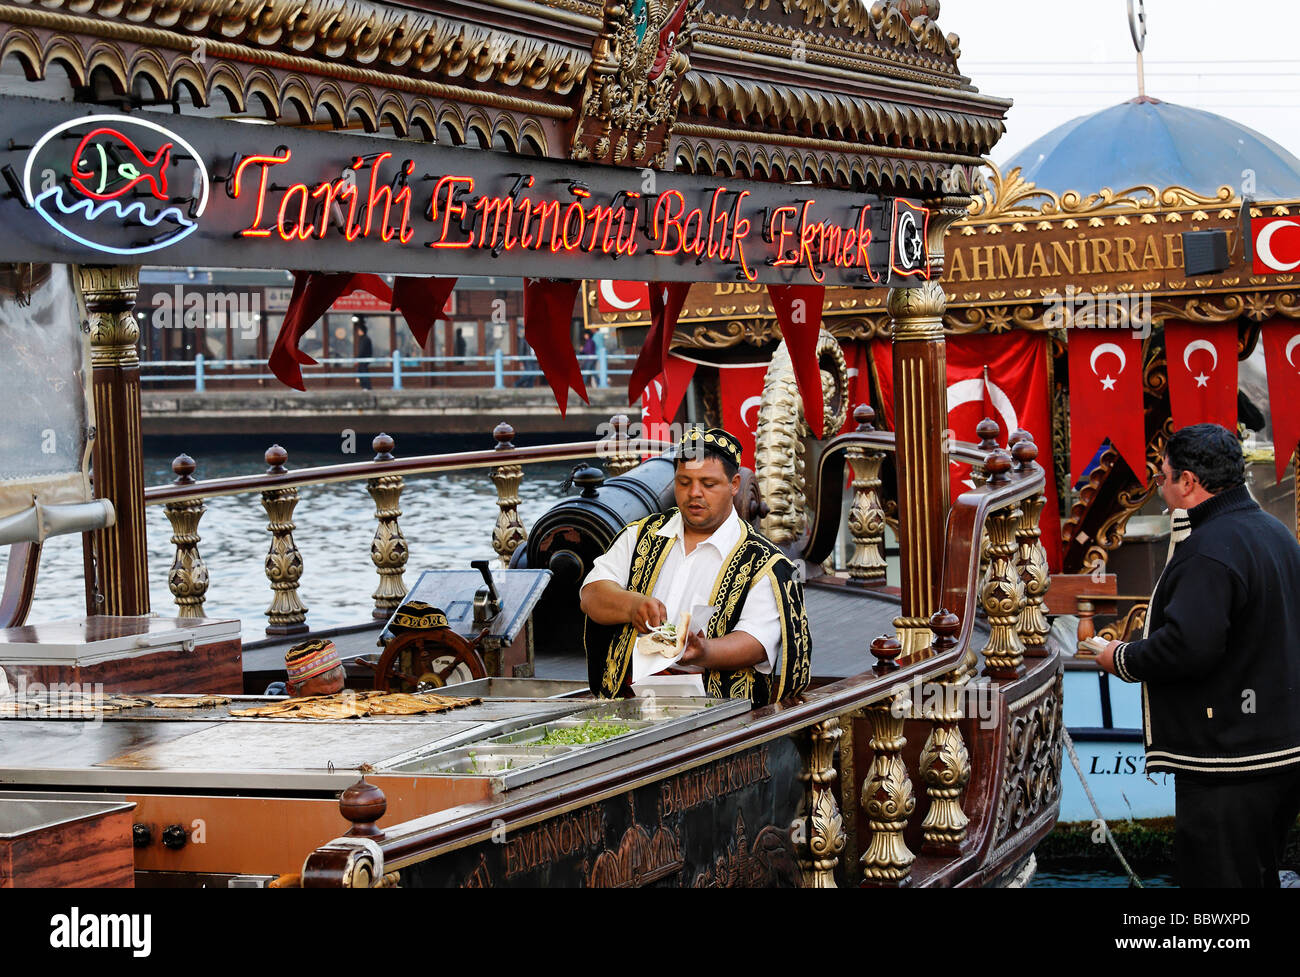 Türke im traditionellen Kostüm Vorbereitung Fischbrötchen auf einem  historisch eingerichteten Boot, Goldenes Horn, Eminoenue, Istanbul, Türkei  Stockfotografie - Alamy